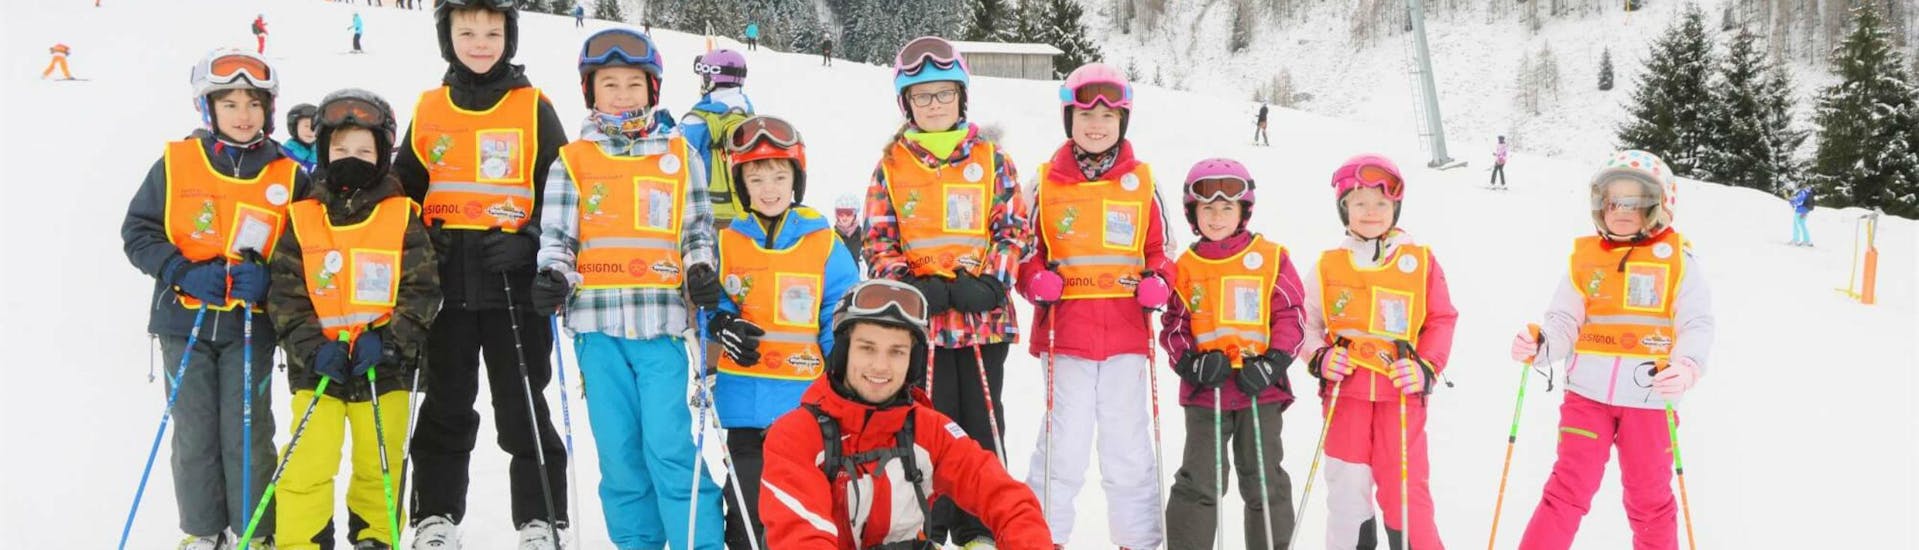 Un groupe d'enfants et leur moniteur de ski de S4 Snowsport Fieberbrunn sourient à la caméra pendant leur cours de ski pour enfants "programme Juniors" (15-18 ans).